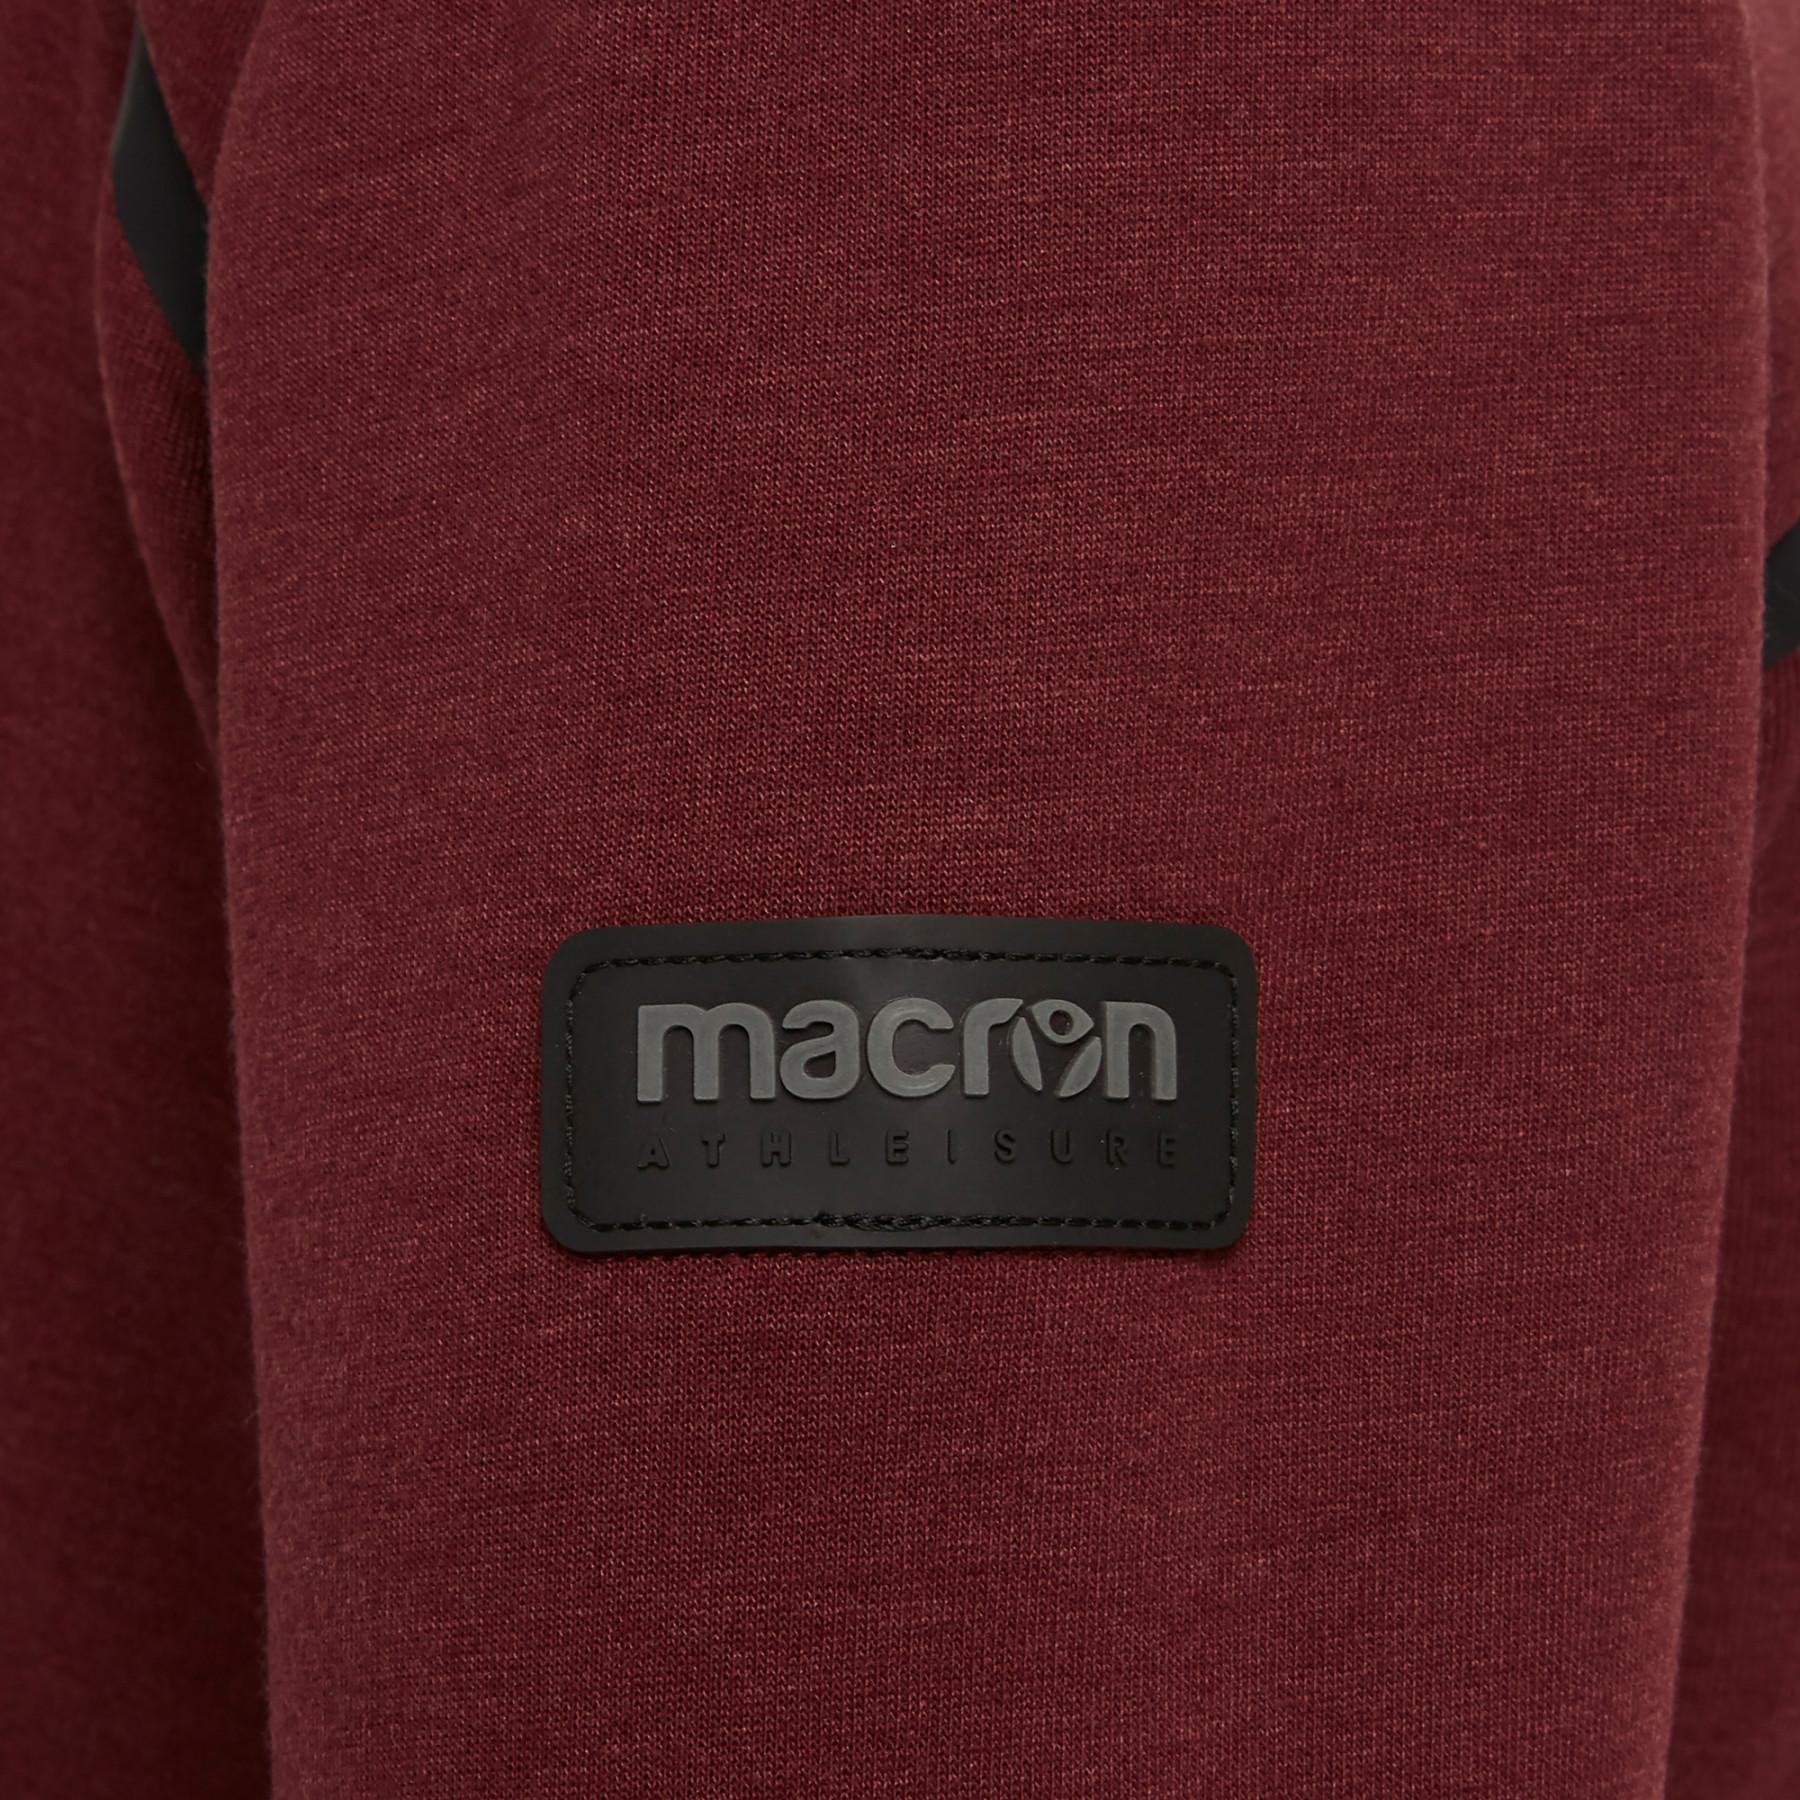 Damen-Sweatshirt Macron yaounde